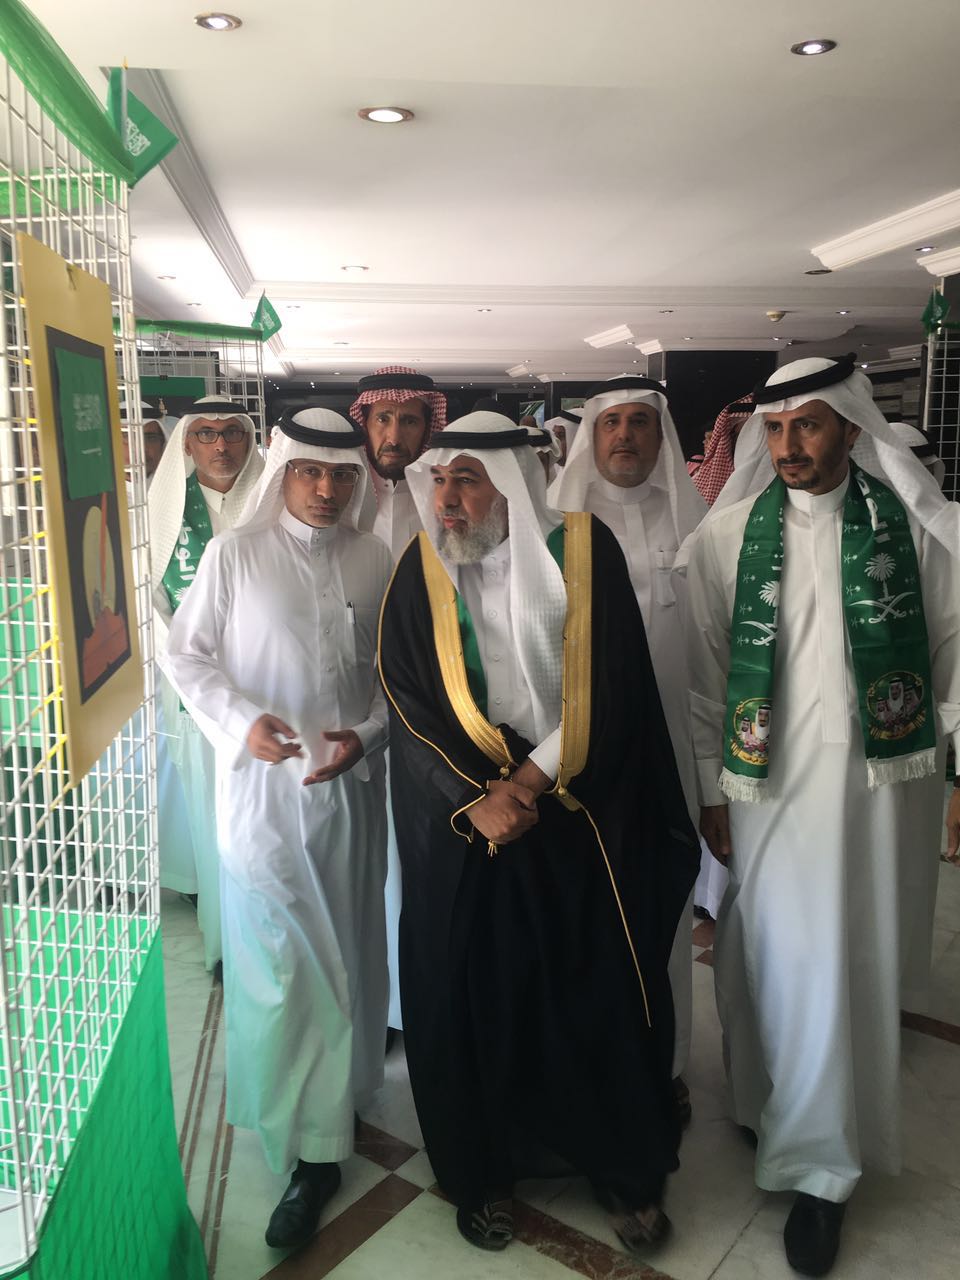 بالصور.. تعليم مكة يحتفي باليوم الوطني بشعار “رؤية وطن” ويكرِّم الطالبات المتطوعات